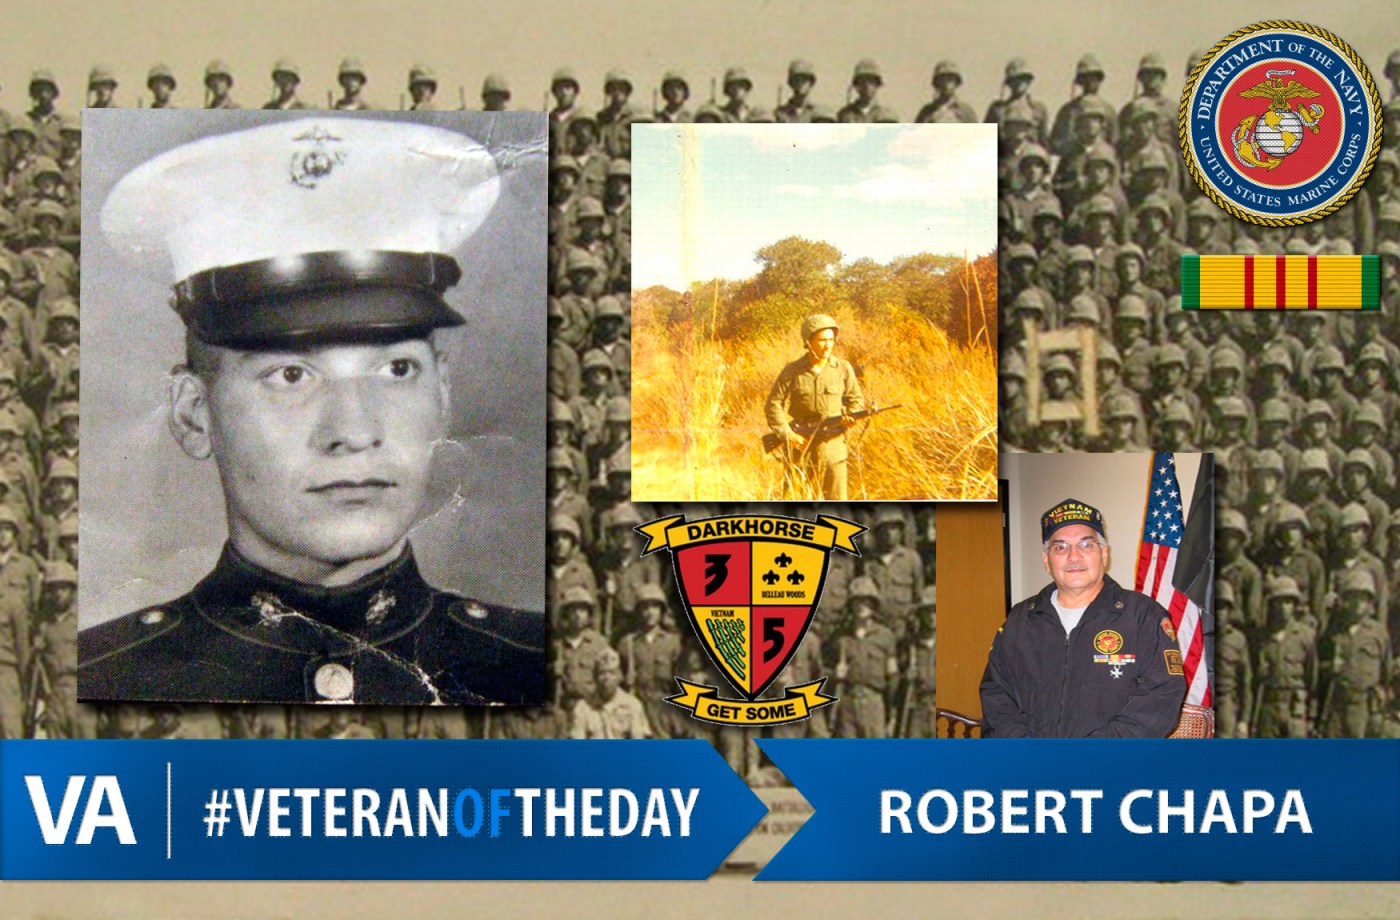 #VeteranOfTheDay Robert Chapa